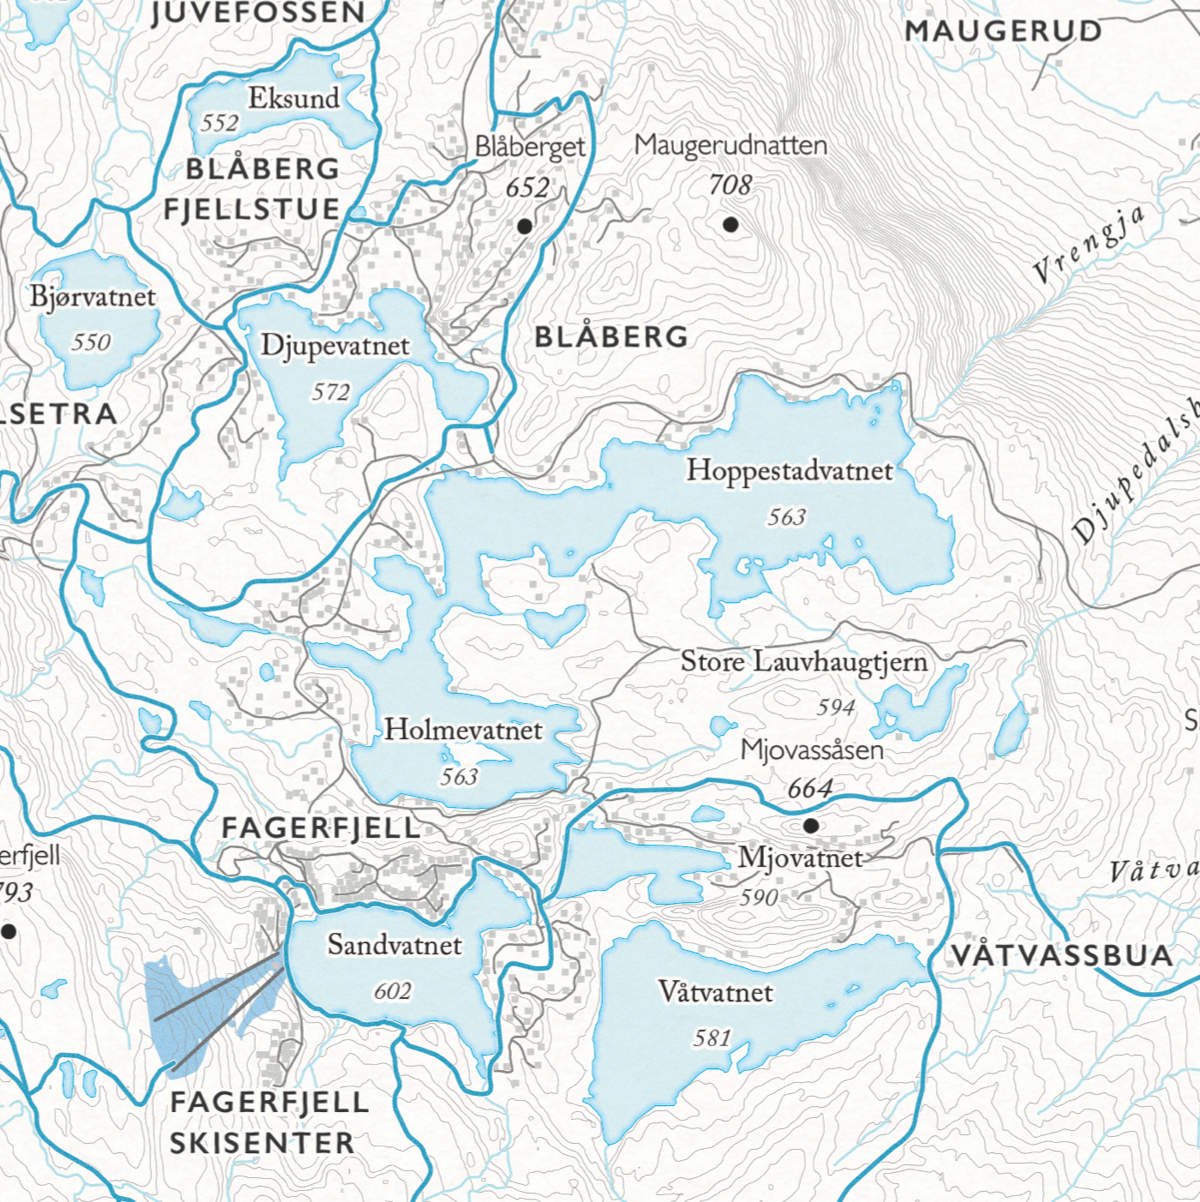 Skikart over Blefjell som viser Blåberg fjellstua, Maugerud, fagerfjell og Våtvassbua.